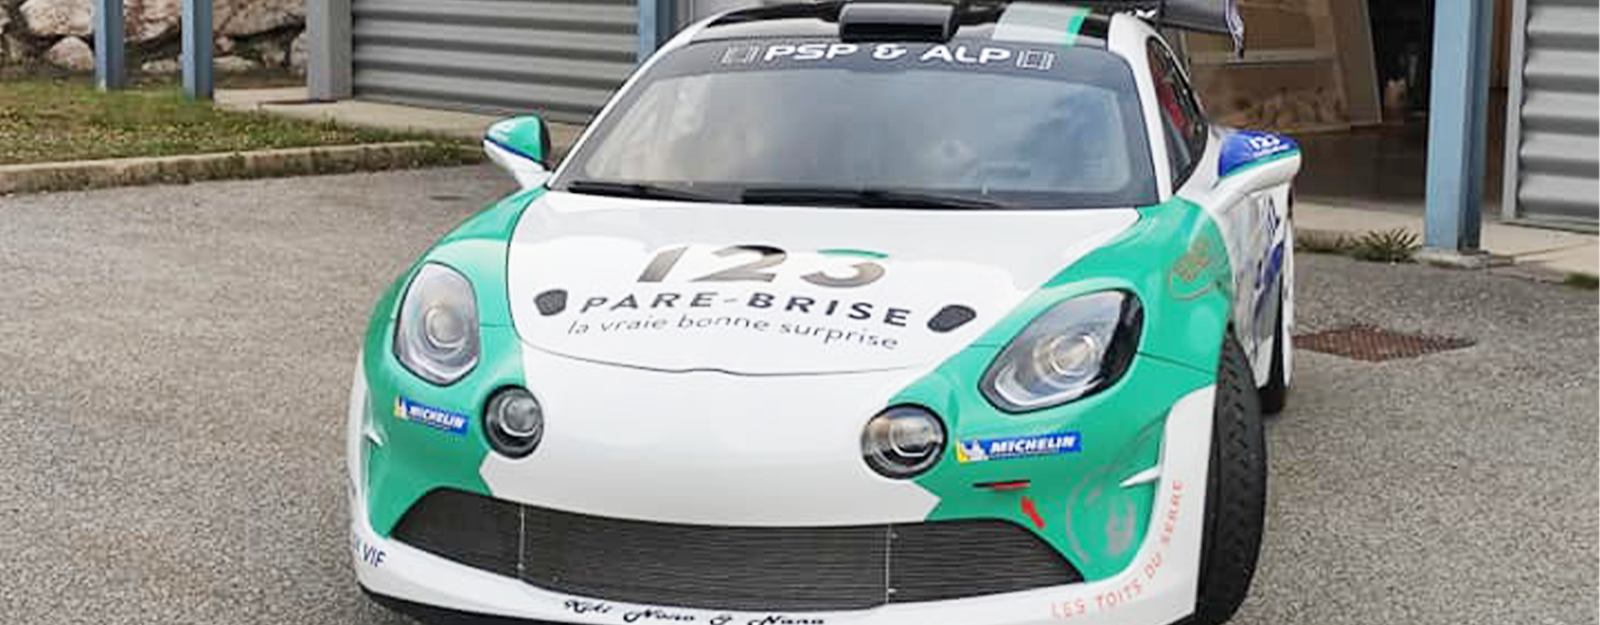 123 Pare-Brise partenaire de Raphaël Marry, pilote automobile A110 R-GT.